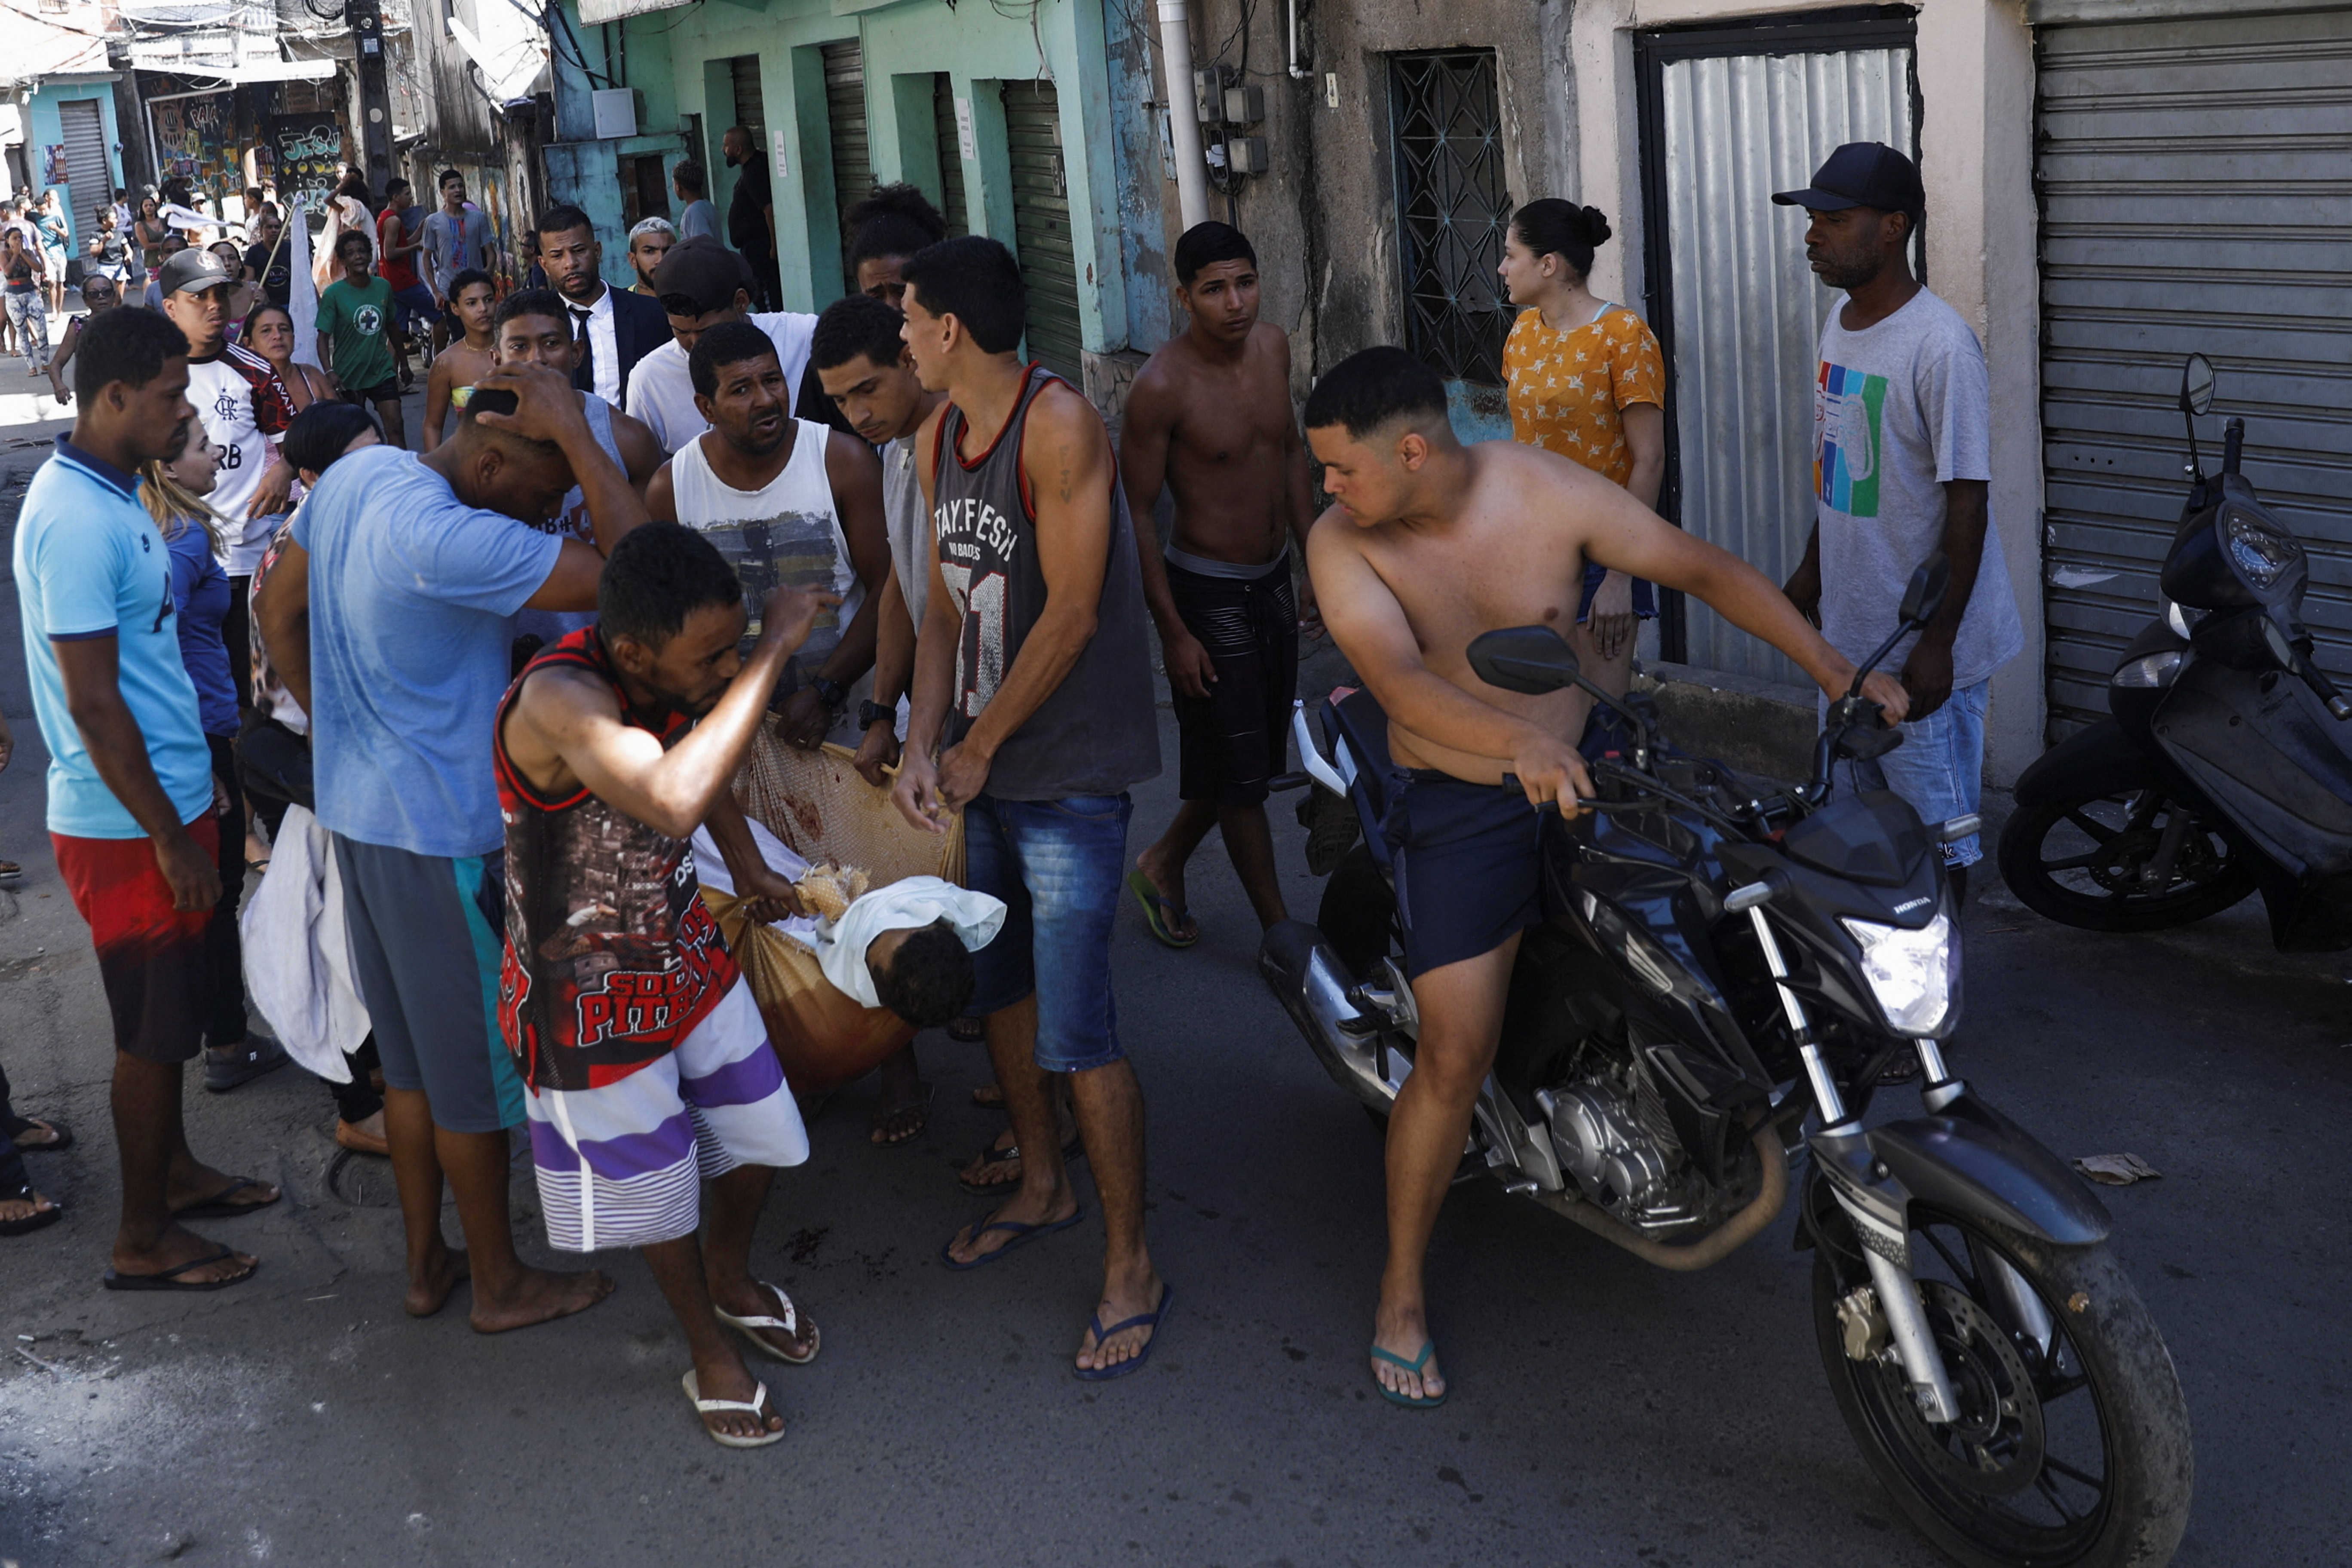 Una operación policial en la favela Alemano dejó al menos 18 muertos (REUTERS/Ricardo Moraes)